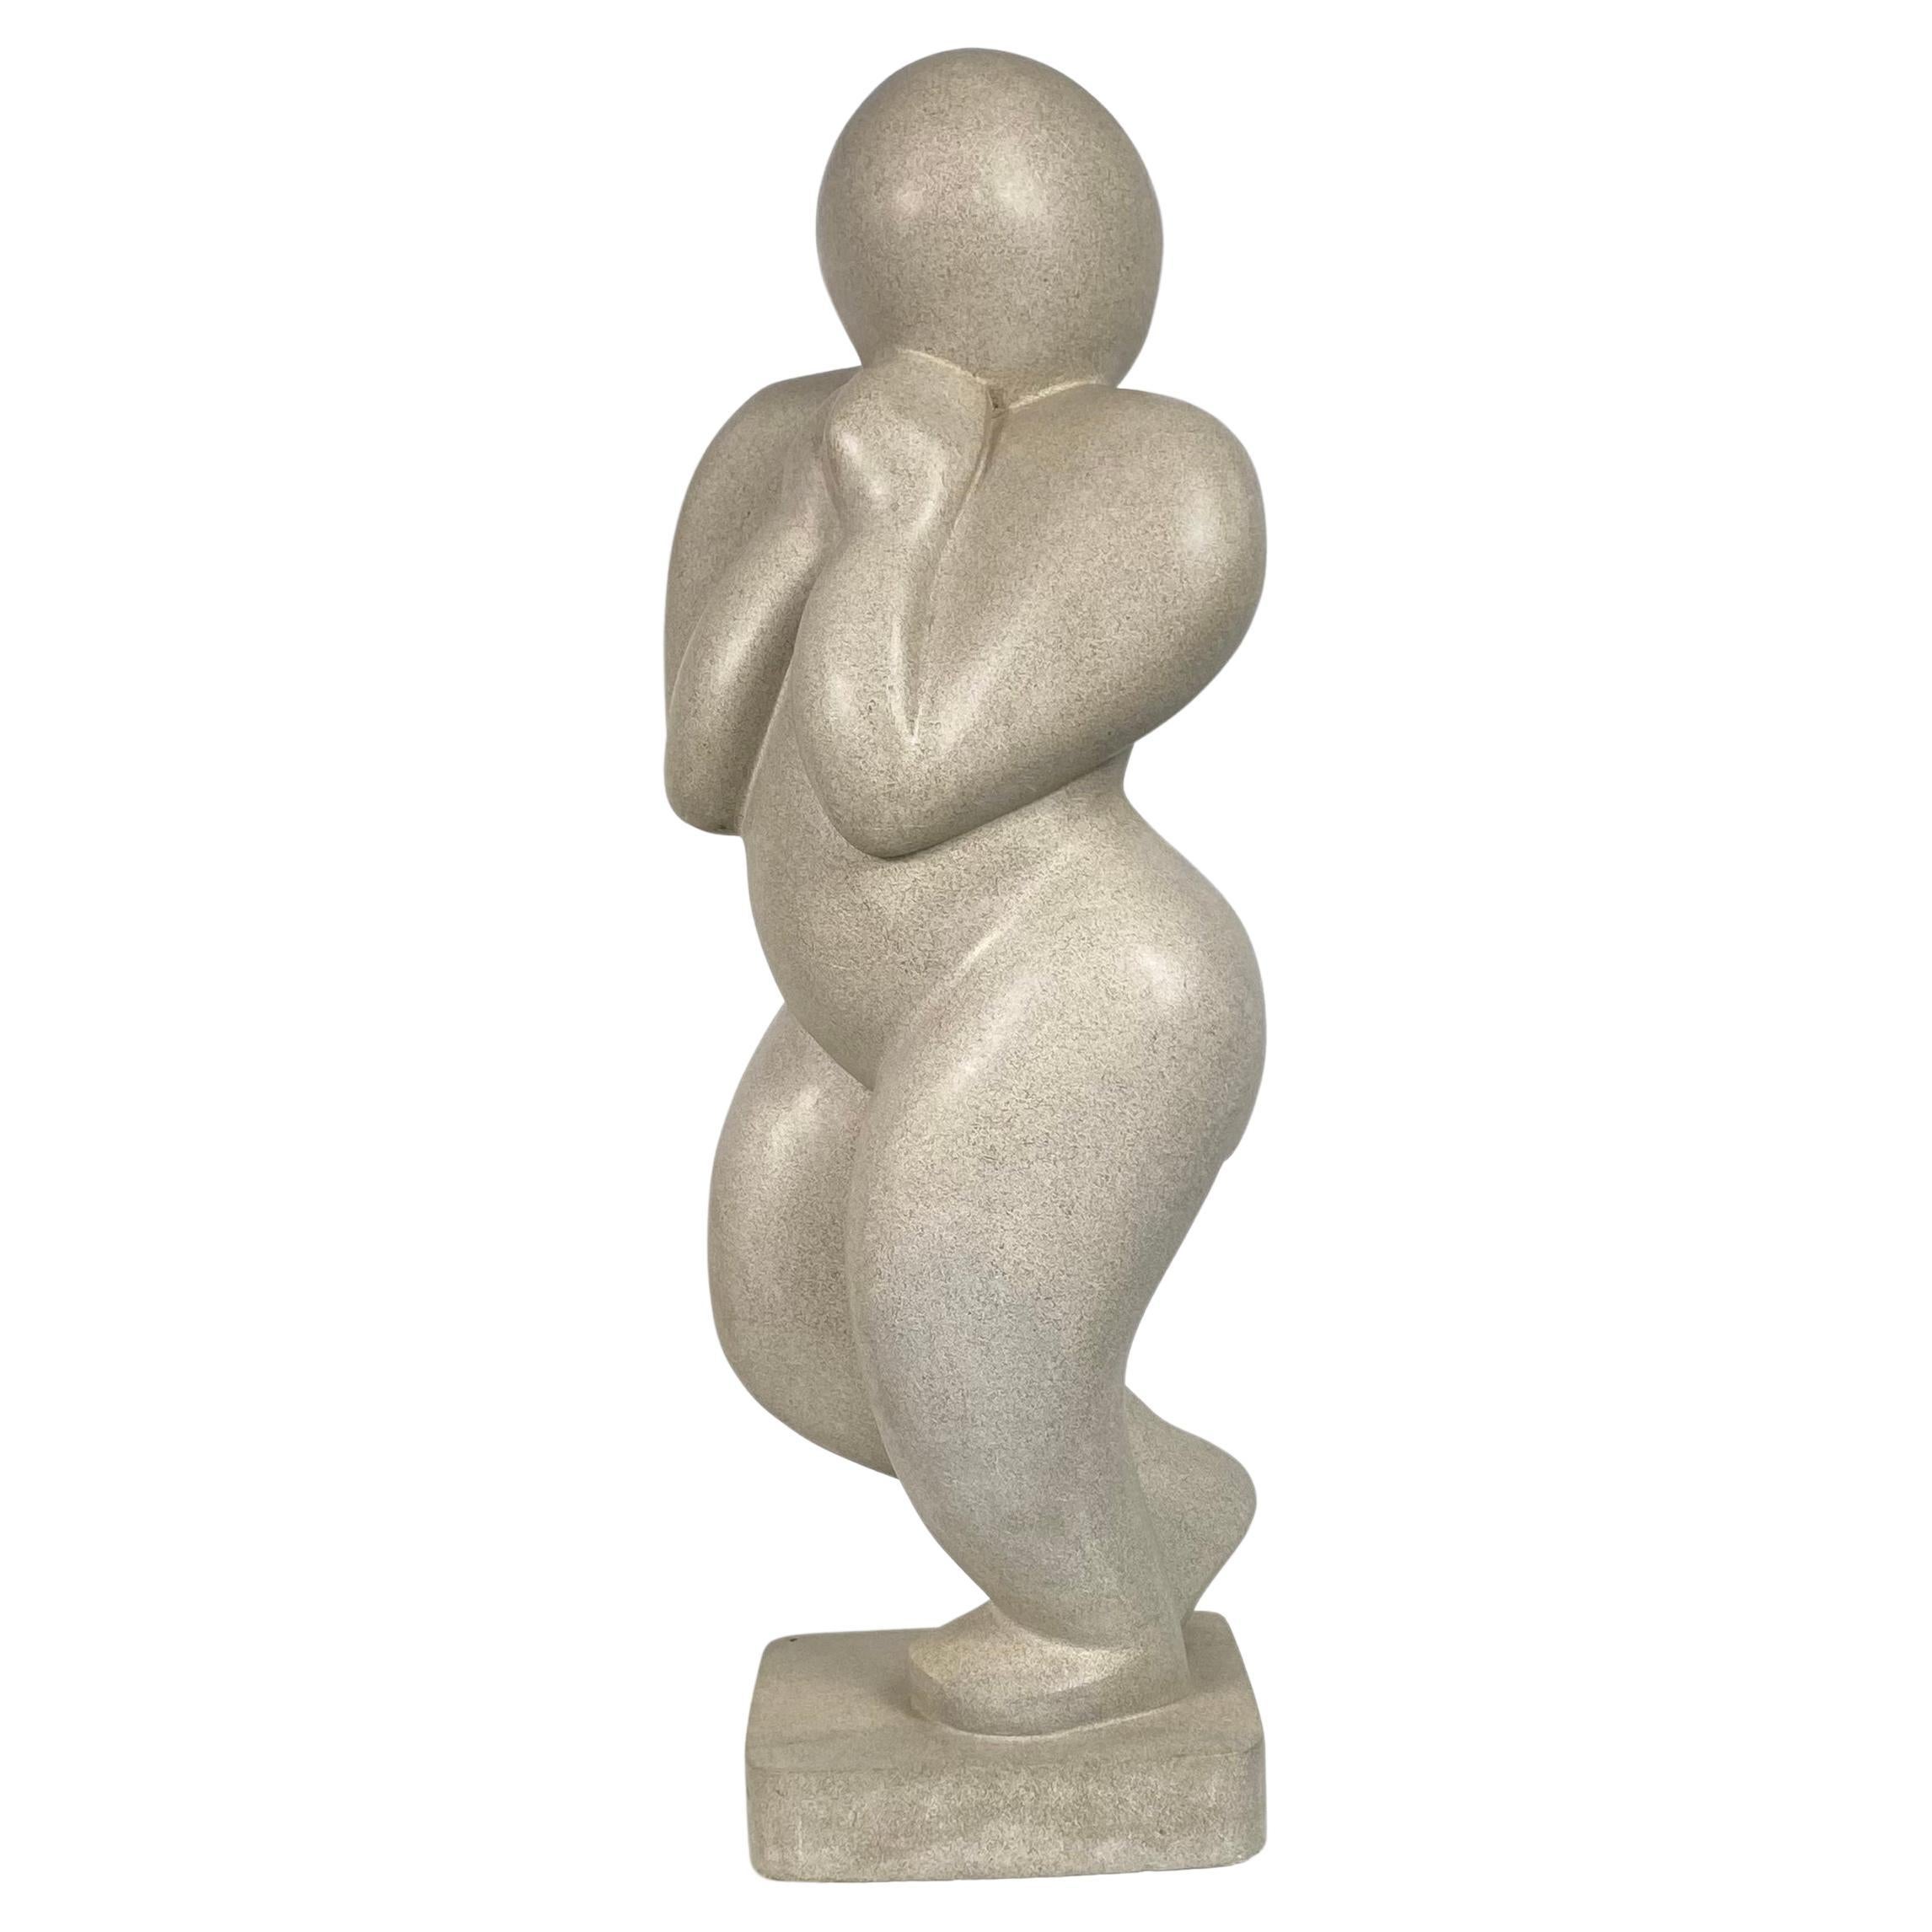 Sculpture figurative moderniste en pierre sculptée..W.P.A.STYLE........signée M E F '01